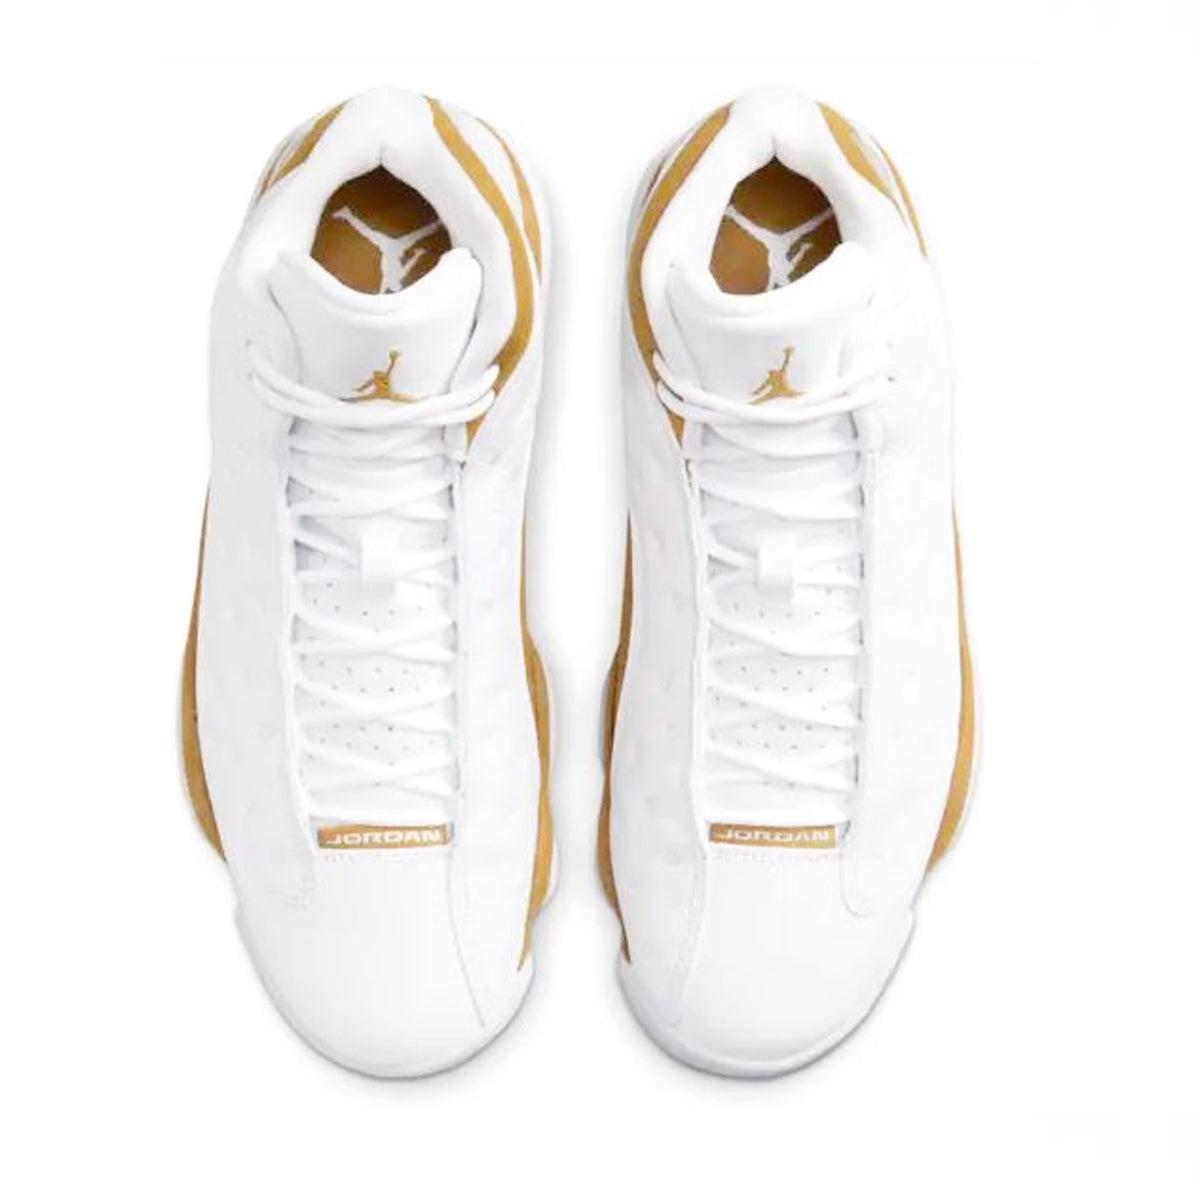 NIKE AIR JORDAN 13 RETRO (WHITE/WHEAT) Nike Air Jordan 13 Retro "White/Wheat" [414571-171]